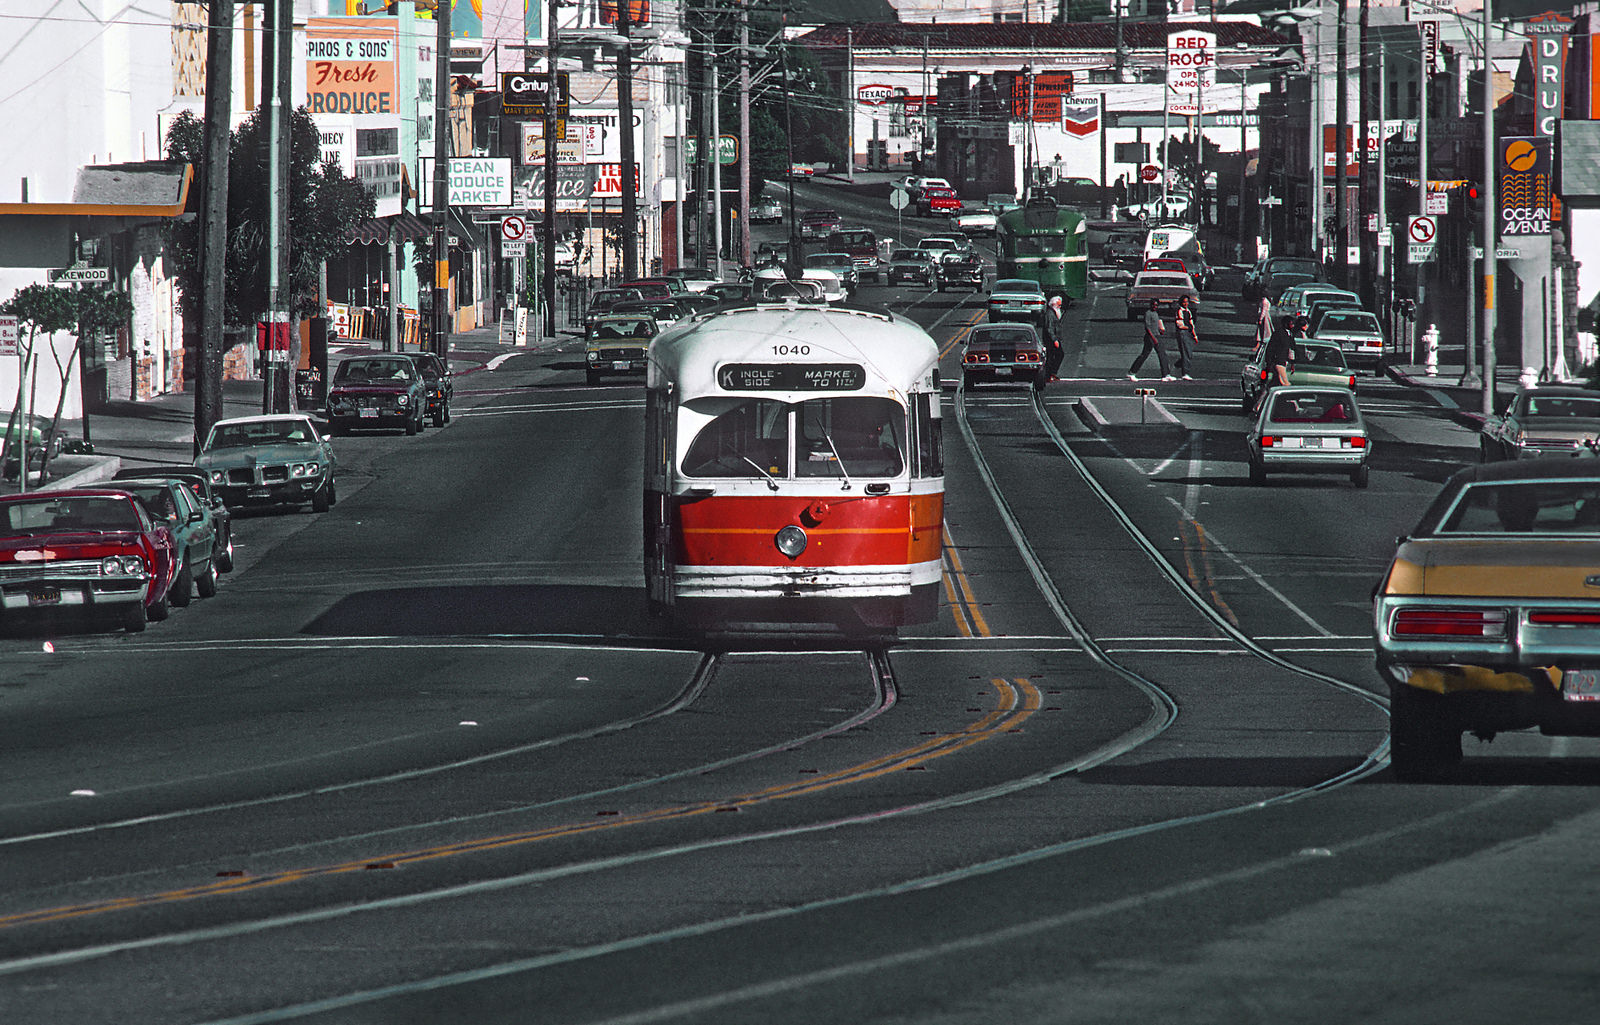 Сан-Франциско, область залива, PCC № 1040; Сан-Франциско, область залива — Трамвайные линии и инфраструктура